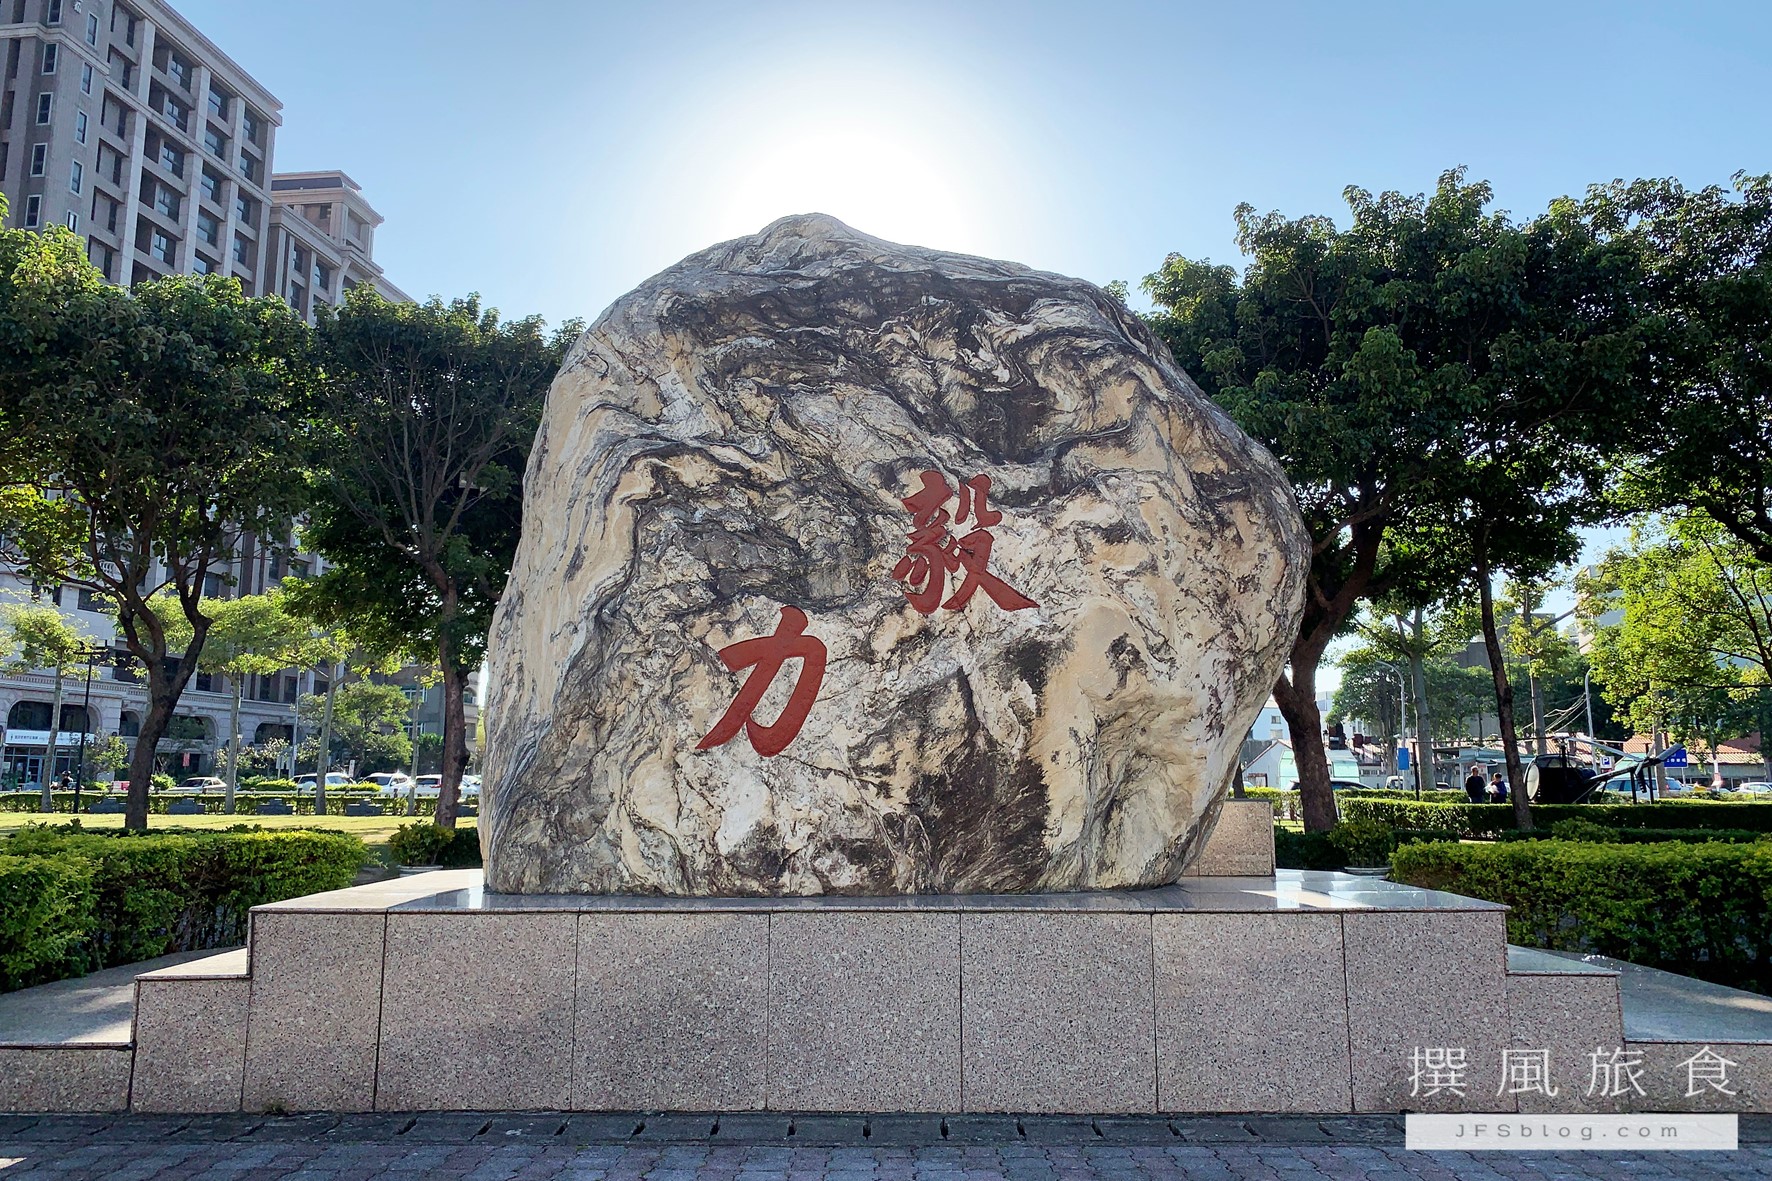 龍潭運動公園的龍騰園巨石誌背面刻有「毅力」